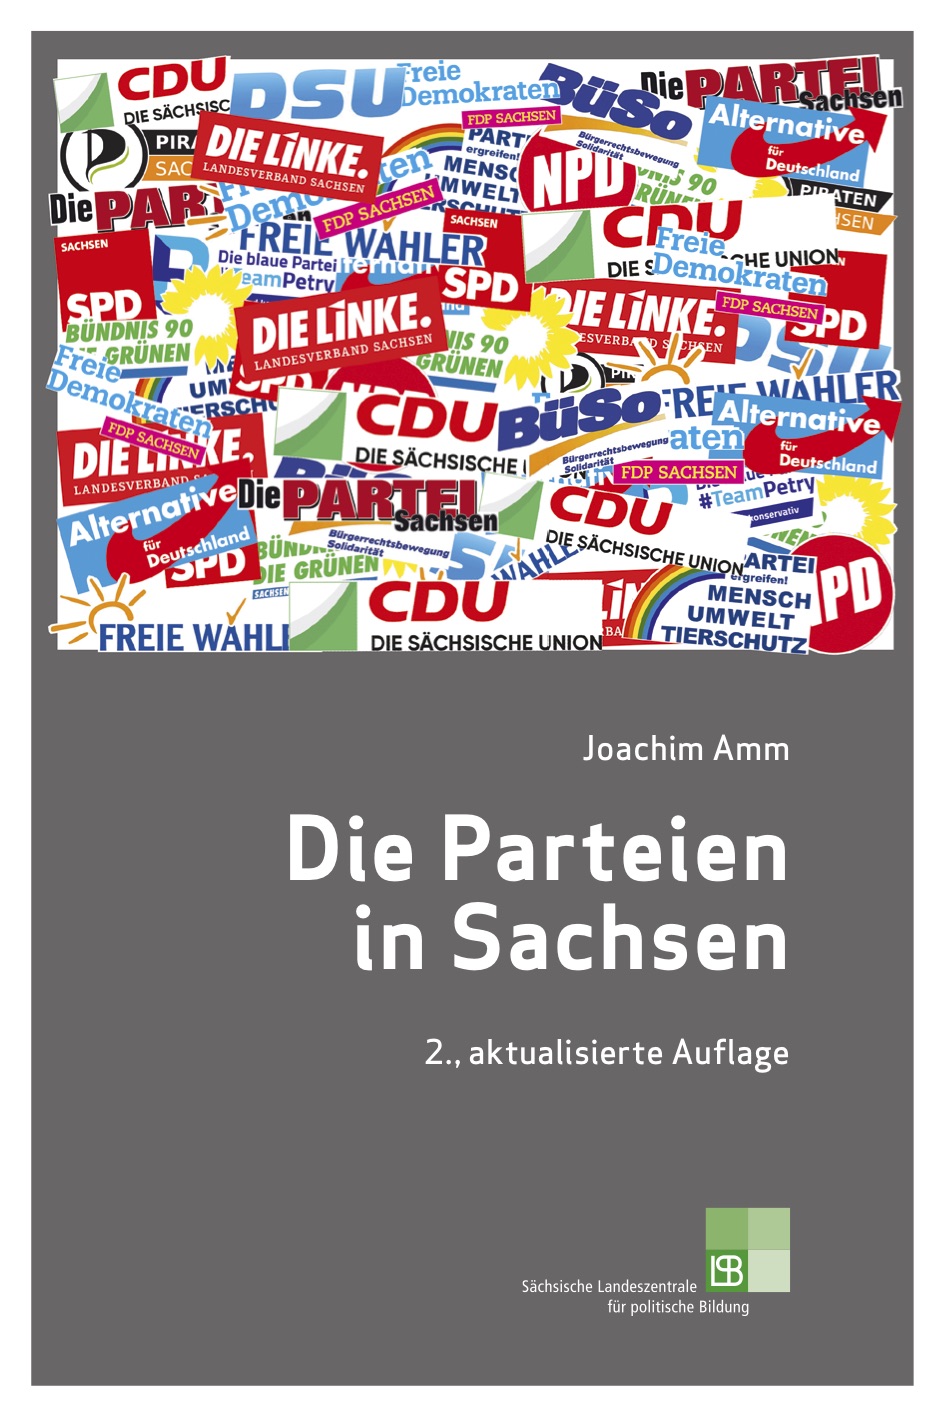 Cover eines Buches mit der Aufschrift: "Joachim Amm. Die Parteien  in Sachsen. 2., aktualisierte Auflage. Sächsische Landeszentrale für politische Bildung." Bei Klick Download des Buches als PDF.